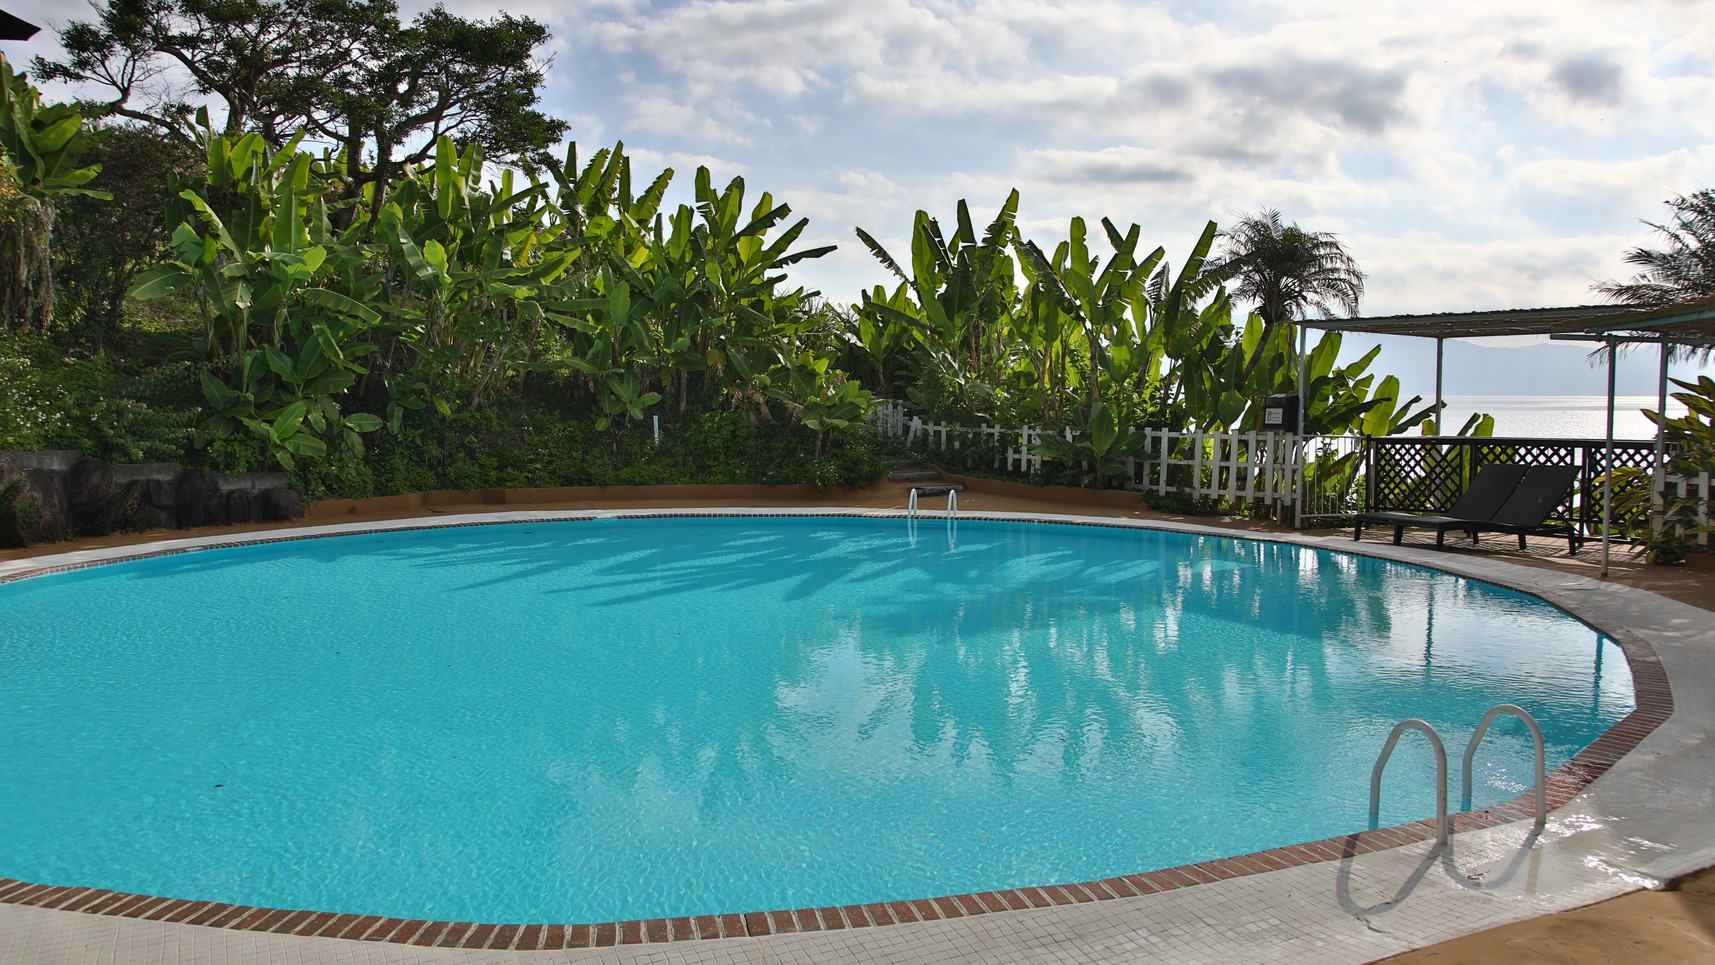 【屋外プール】夏季限定の屋外プール。夏休み期間中、ご宿泊者は無料でプールをご利用いただけます♪